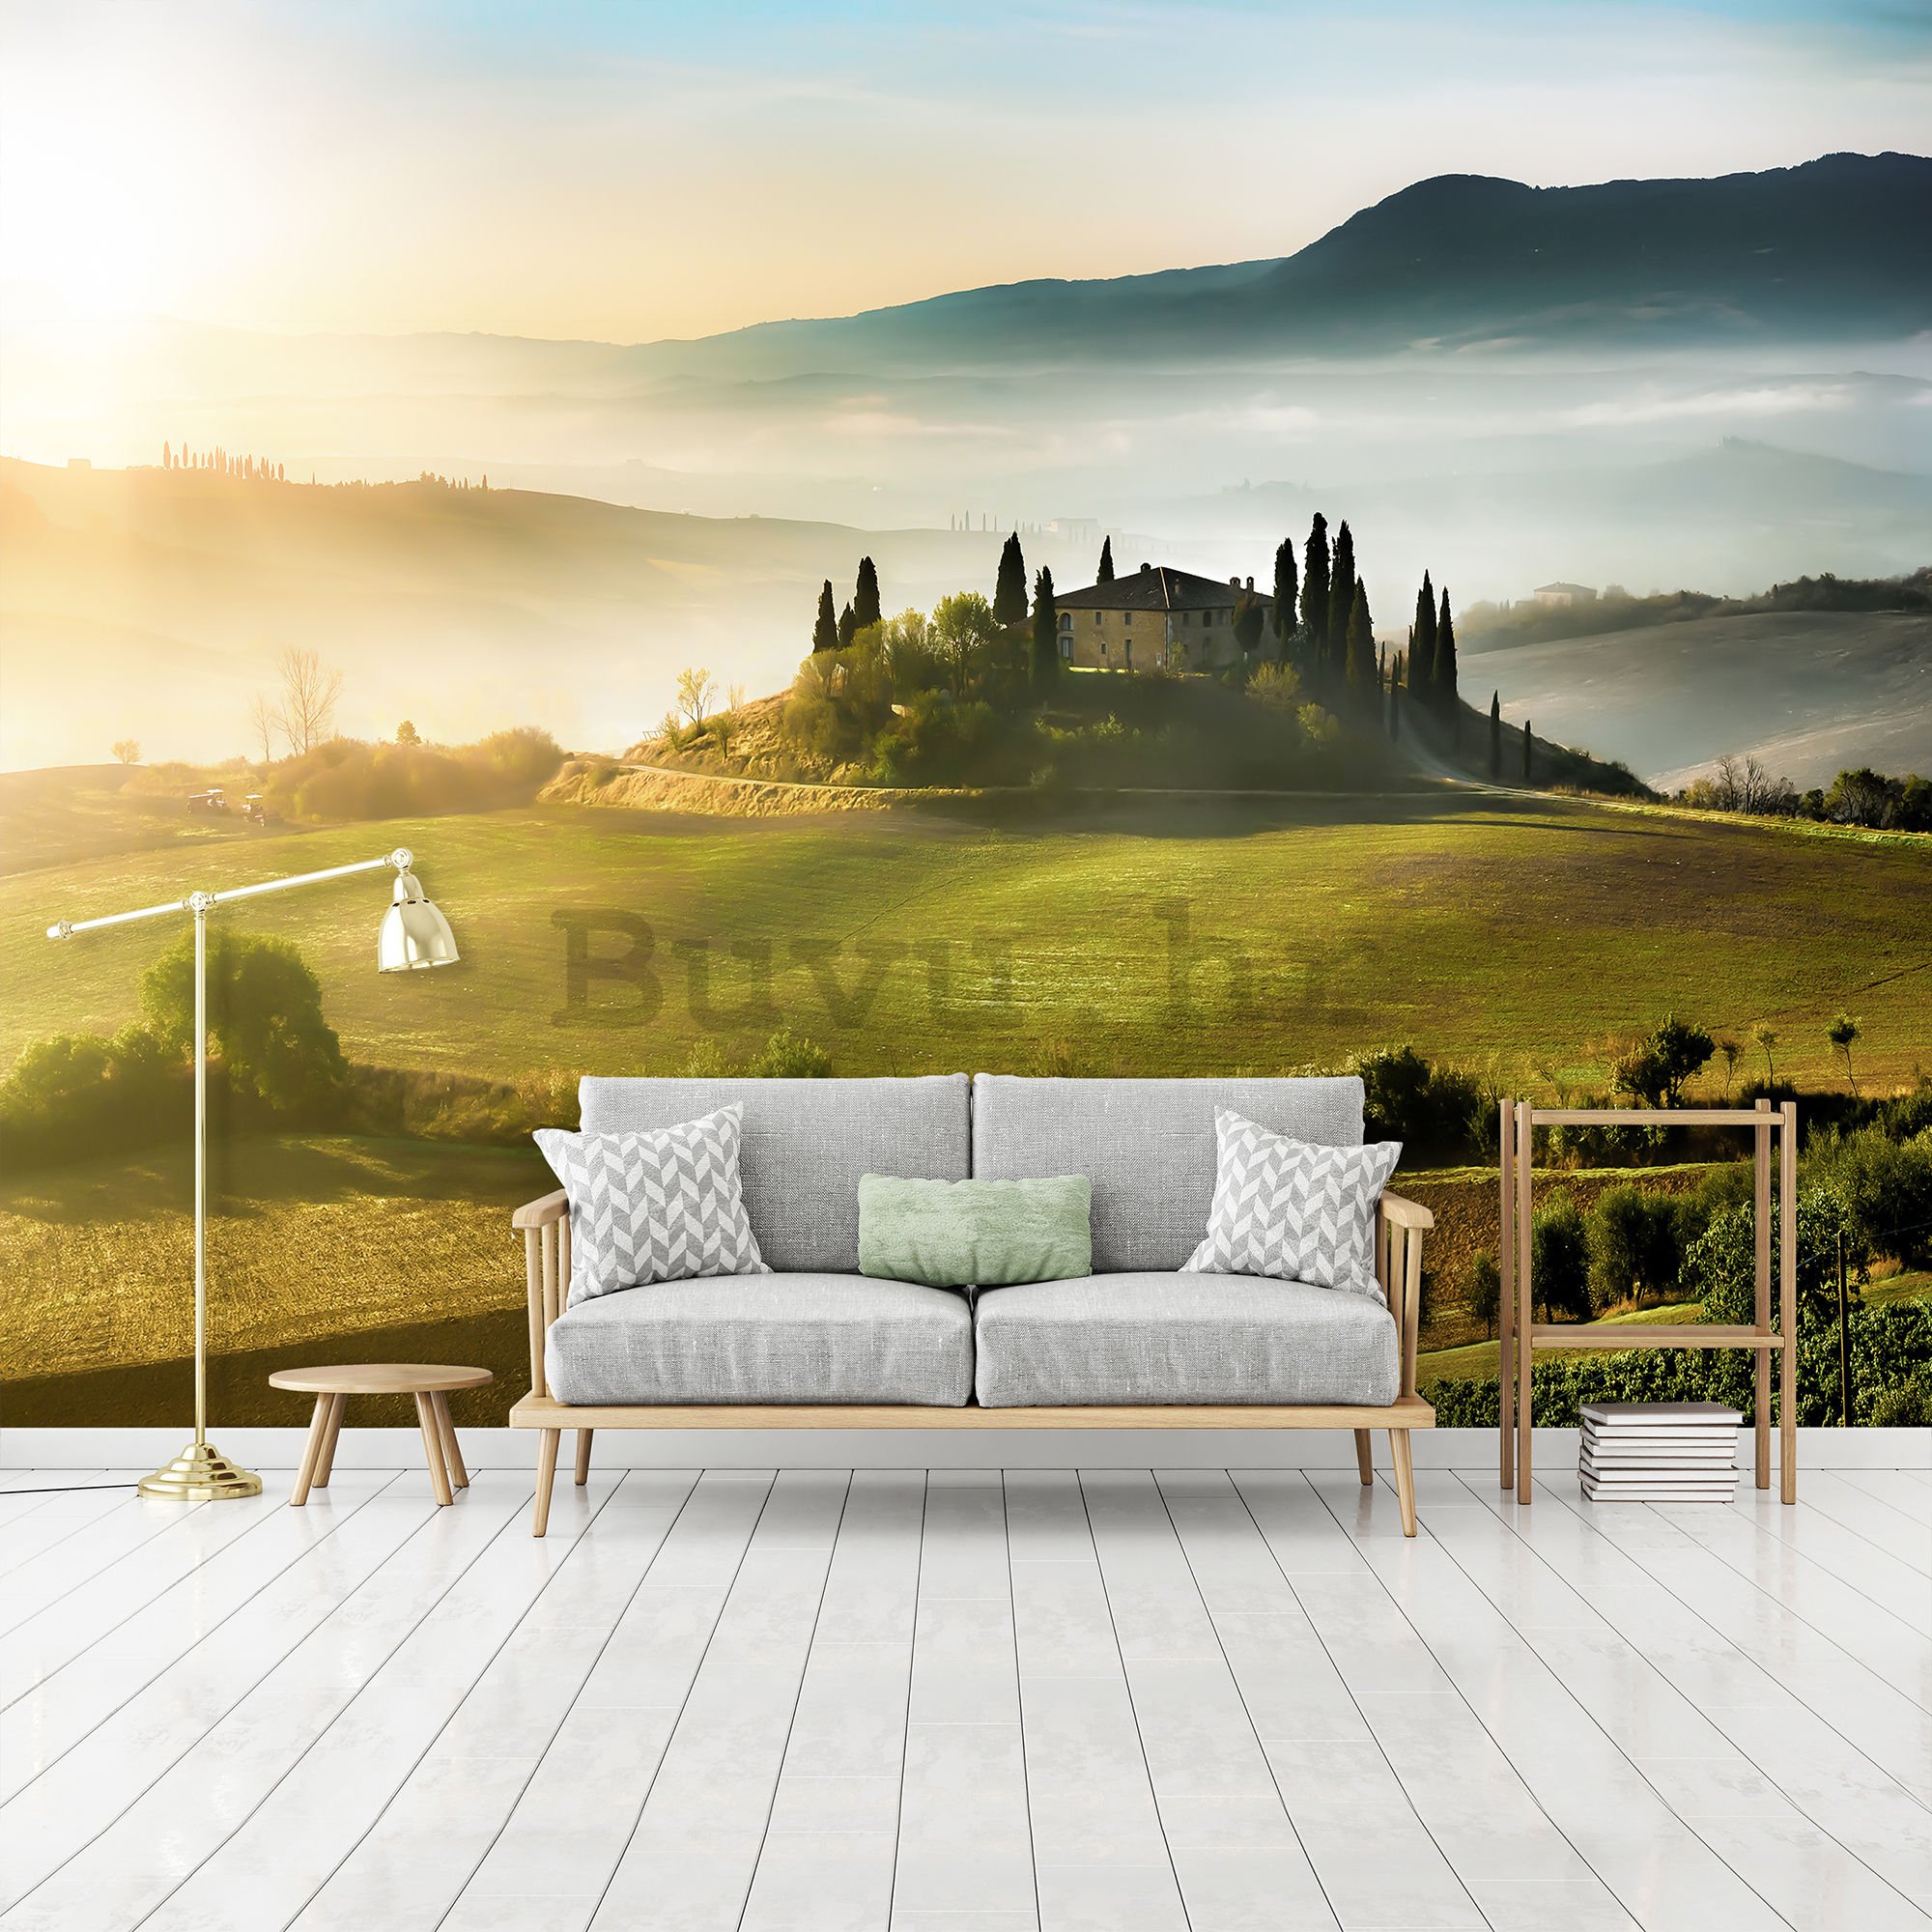 Vlies foto tapeta: Tuscany Hill - 254x368 cm